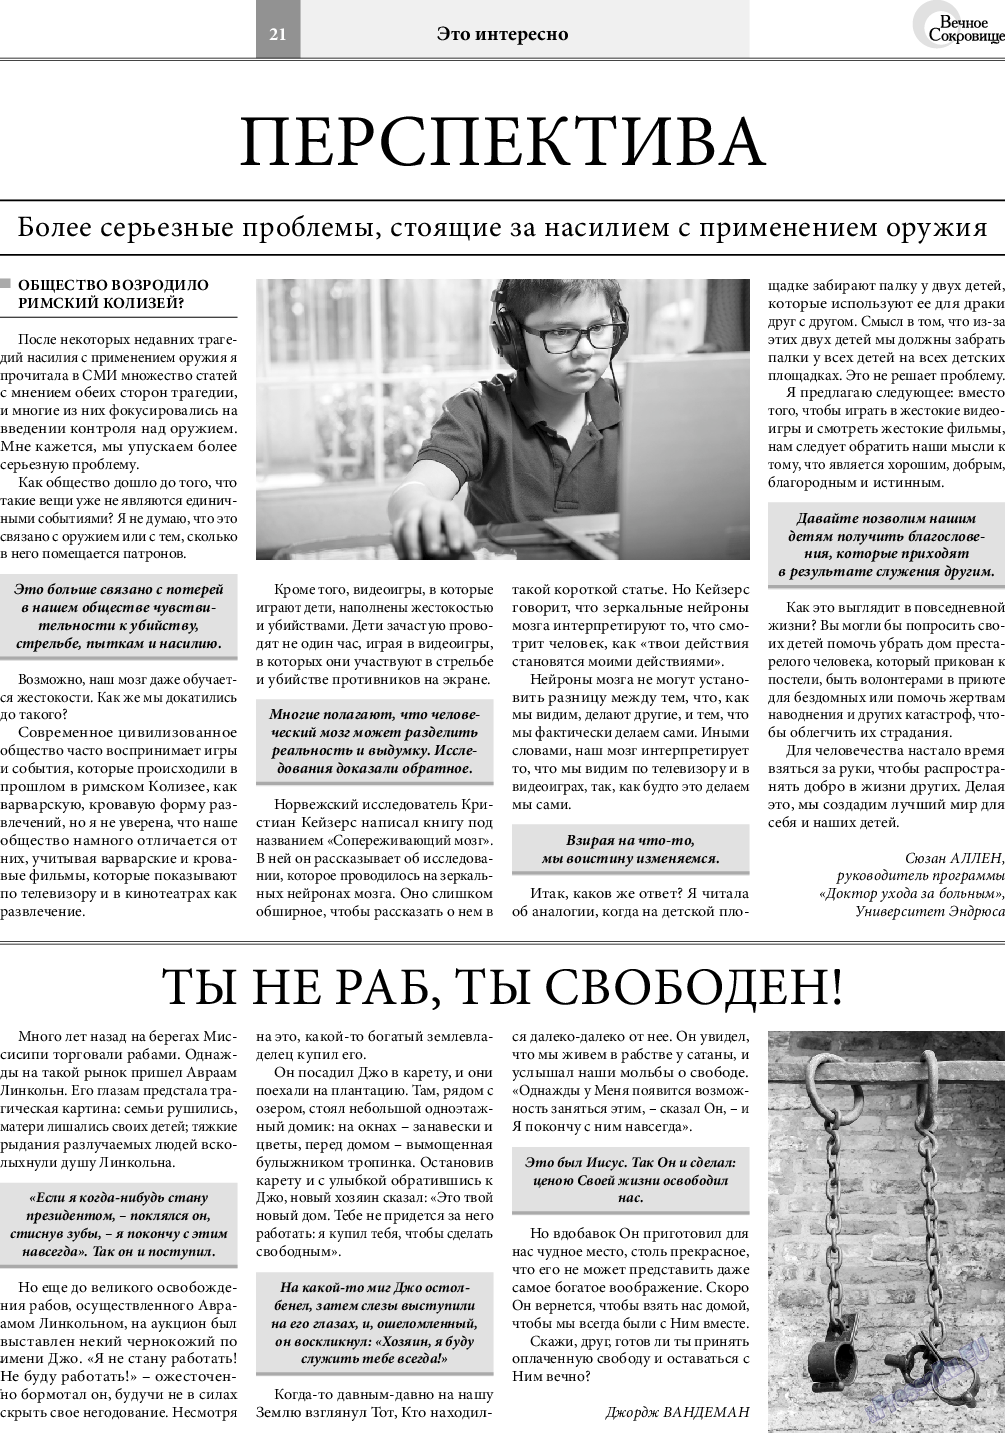 Вечное сокровище, газета. 2018 №4 стр.21